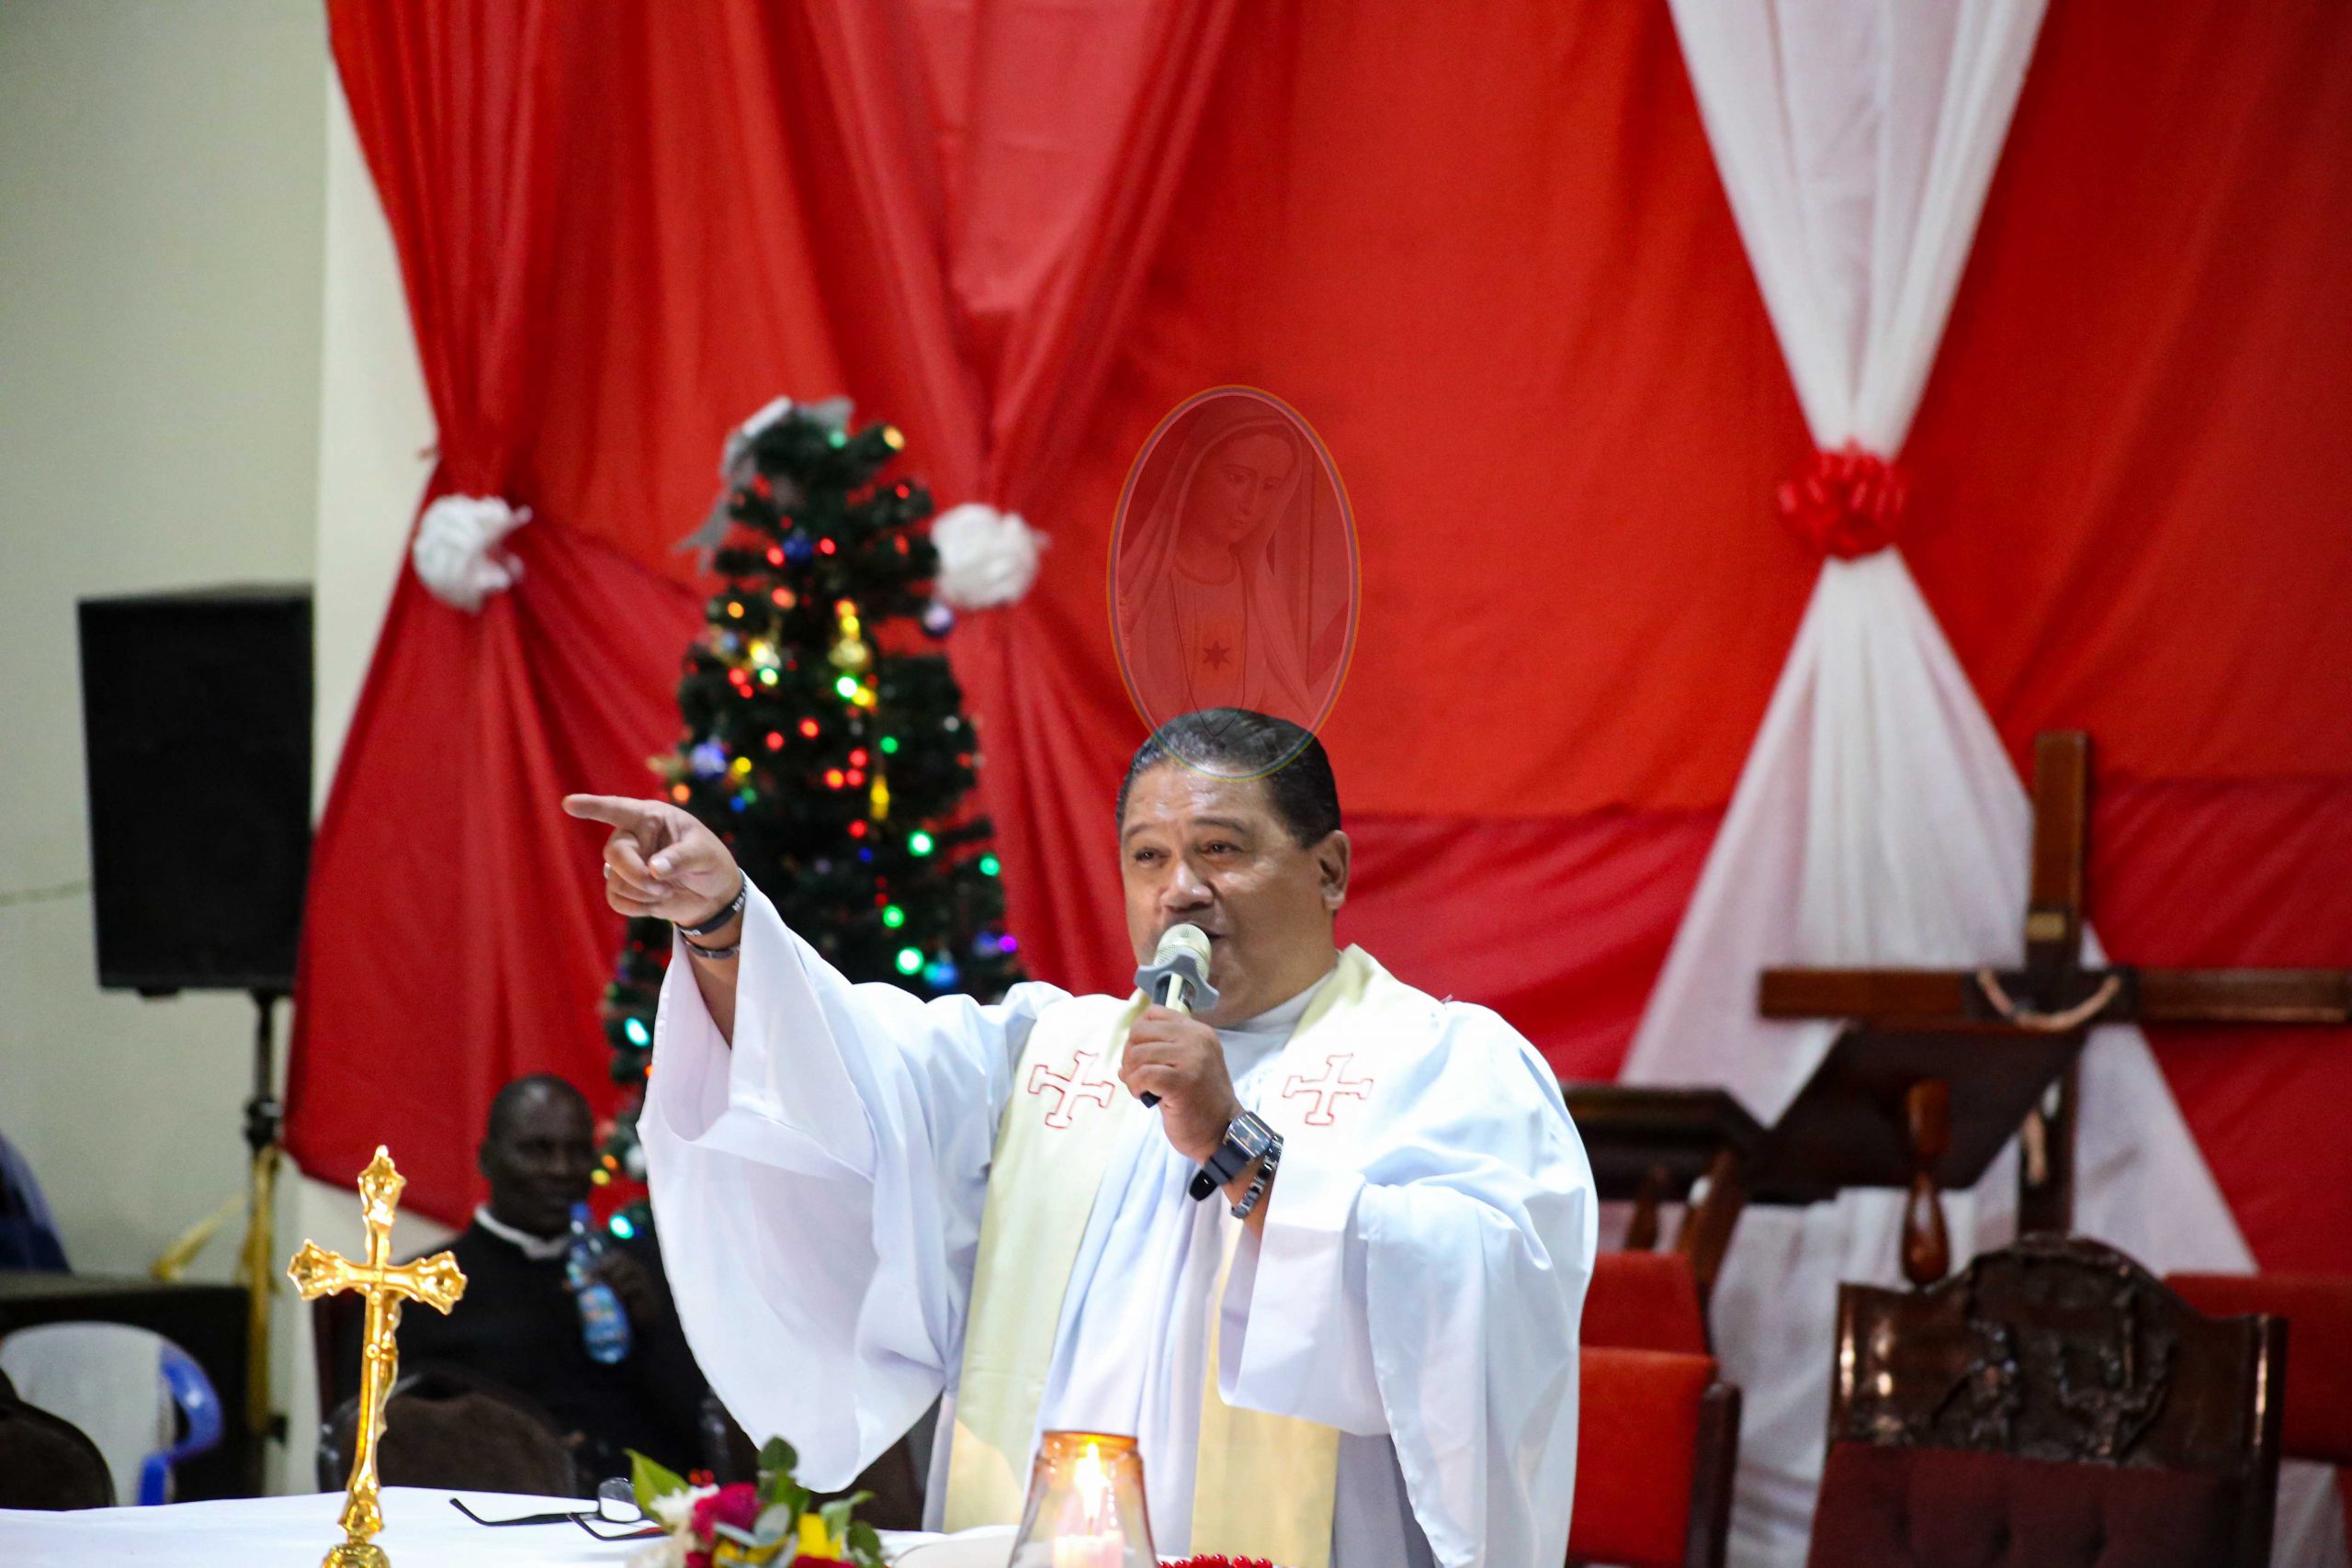 Fr Raymond Kalanzi at Kiwamirembe on 31st Dec 2022